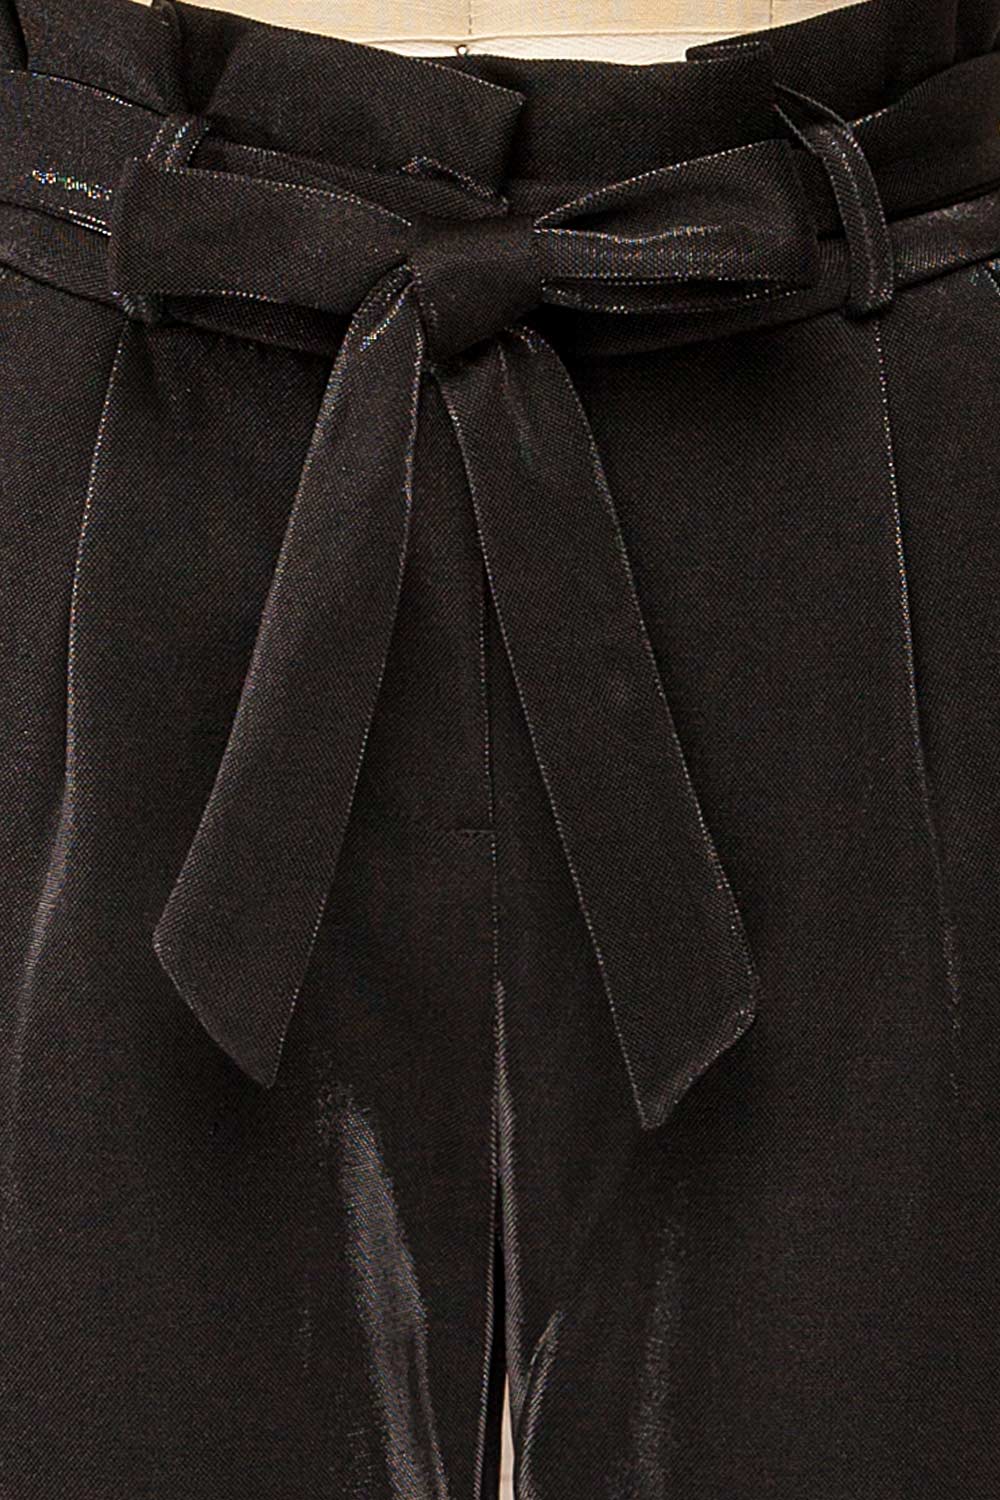 Wytham Black Sparkly Pleated Pants | La petite garçonne fabric 